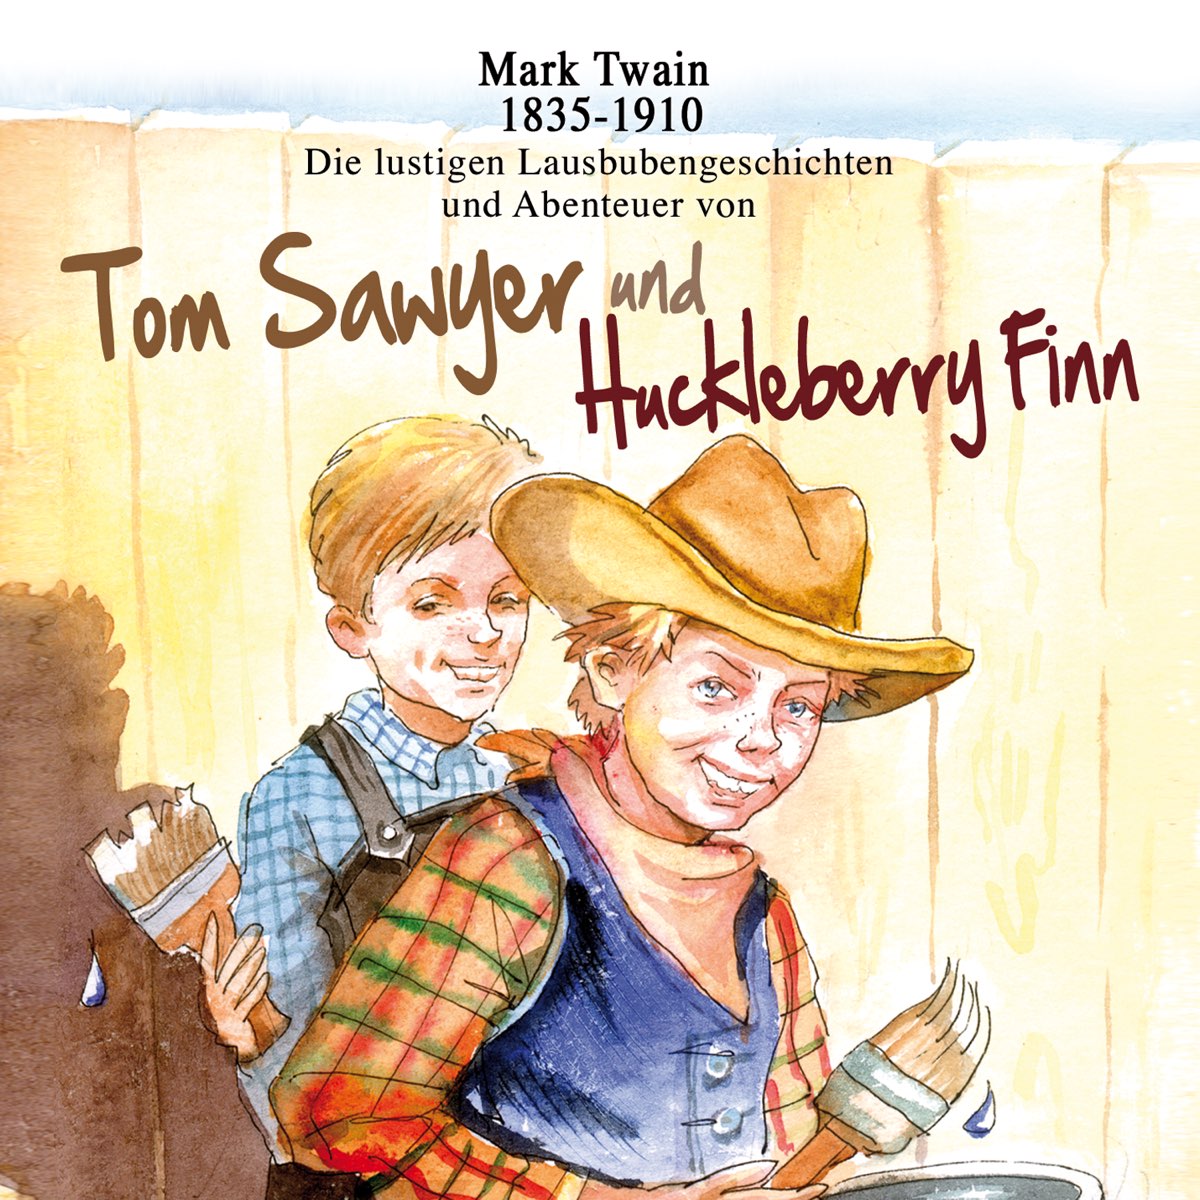 Том сойер сокращение слушать. Mark Twain Tom Sawyer. Том Сойер и Гекльберри. Tom Sawyer & Huckleberry Finn. Mark Twain Tom Sawyer and Huckleberry Finn.